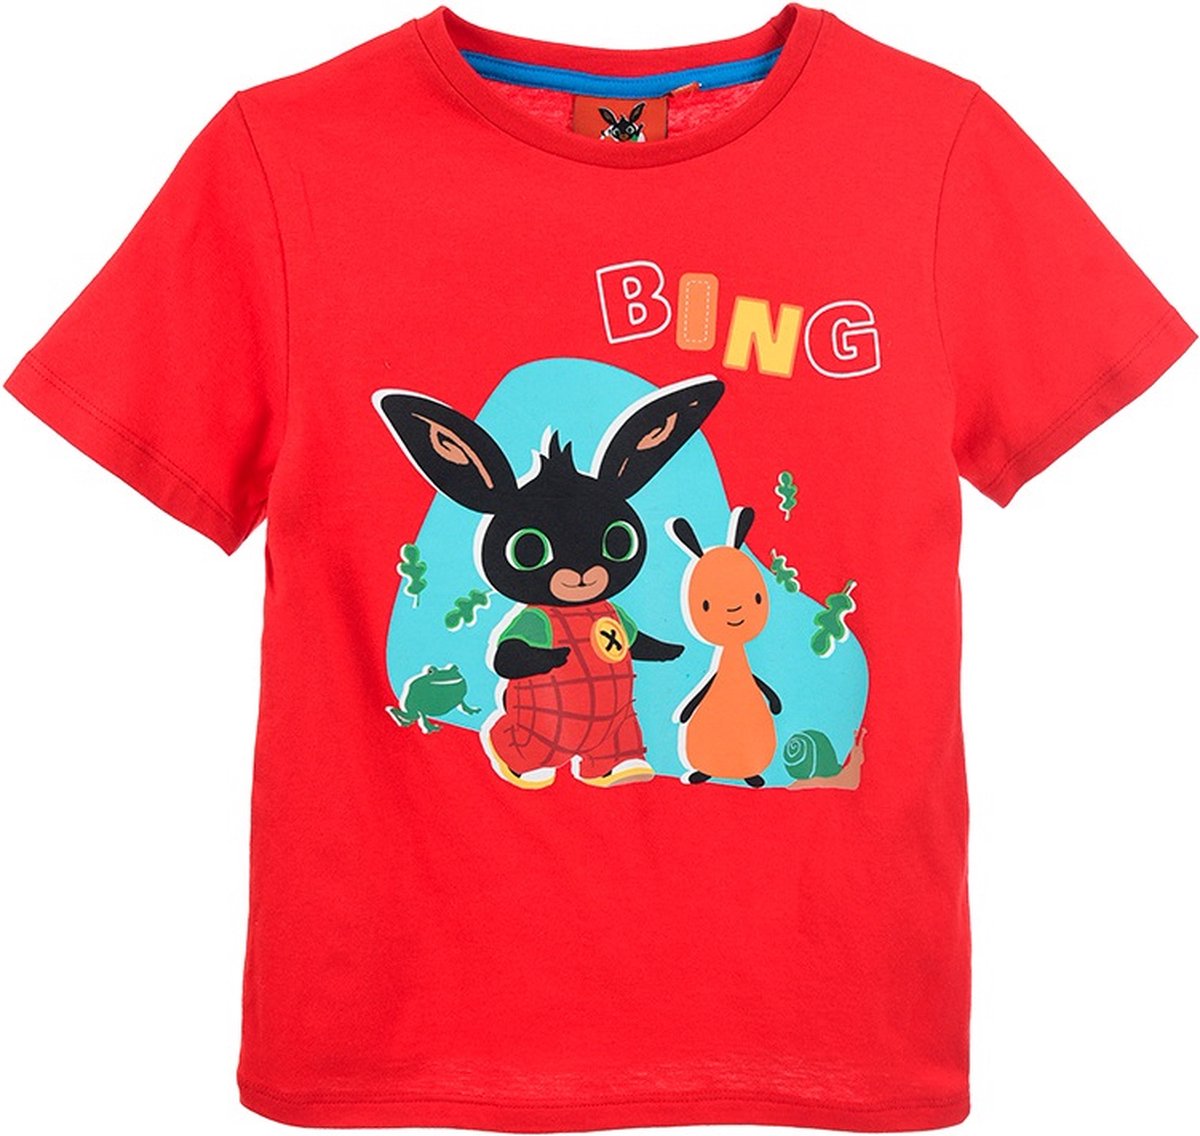 Bing Bunny - T-shirt Bing Bunny - rood - maat 104